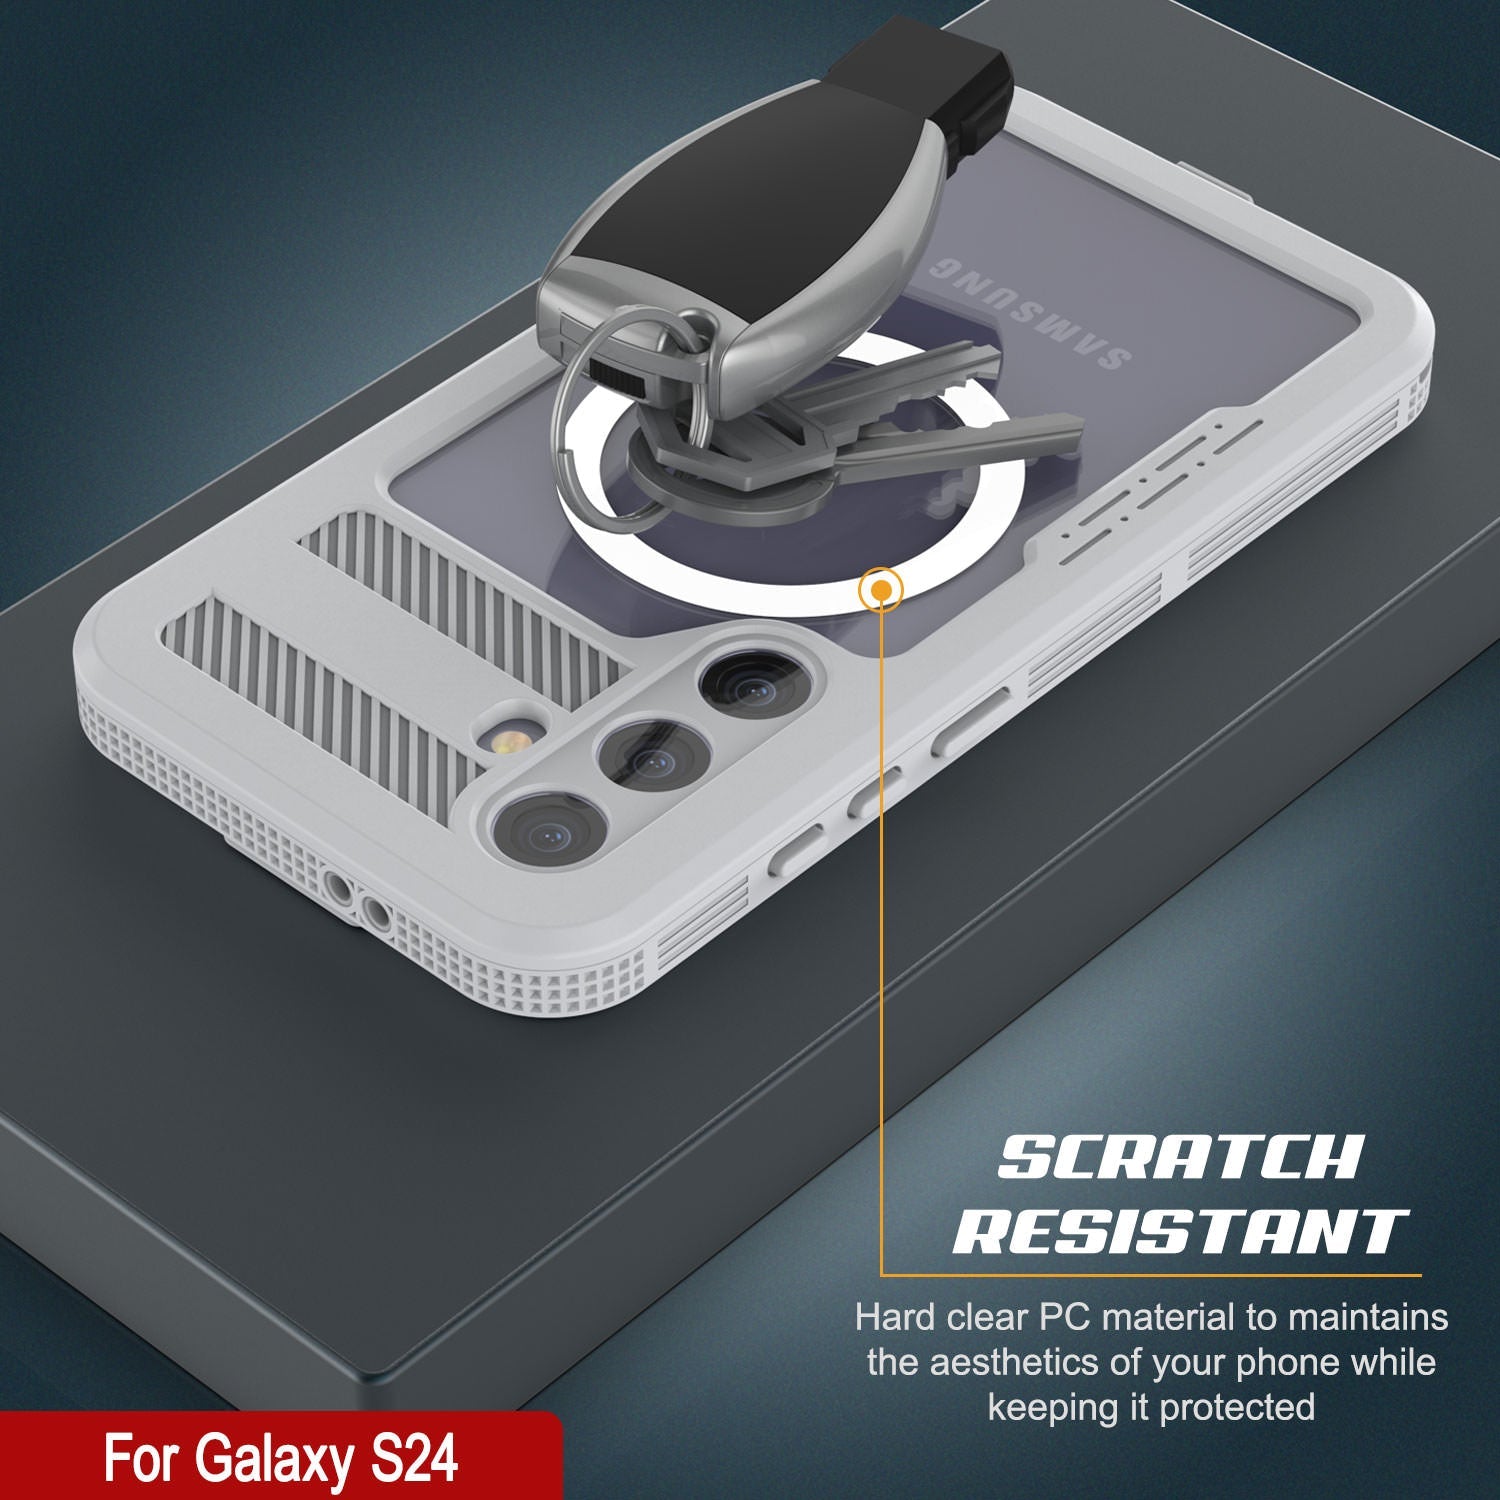 Galaxy S24 Ultra Waterproof Case [Alpine 2.0 Series] [Slim Fit] [IP68 Certified] [Shockproof] [White]